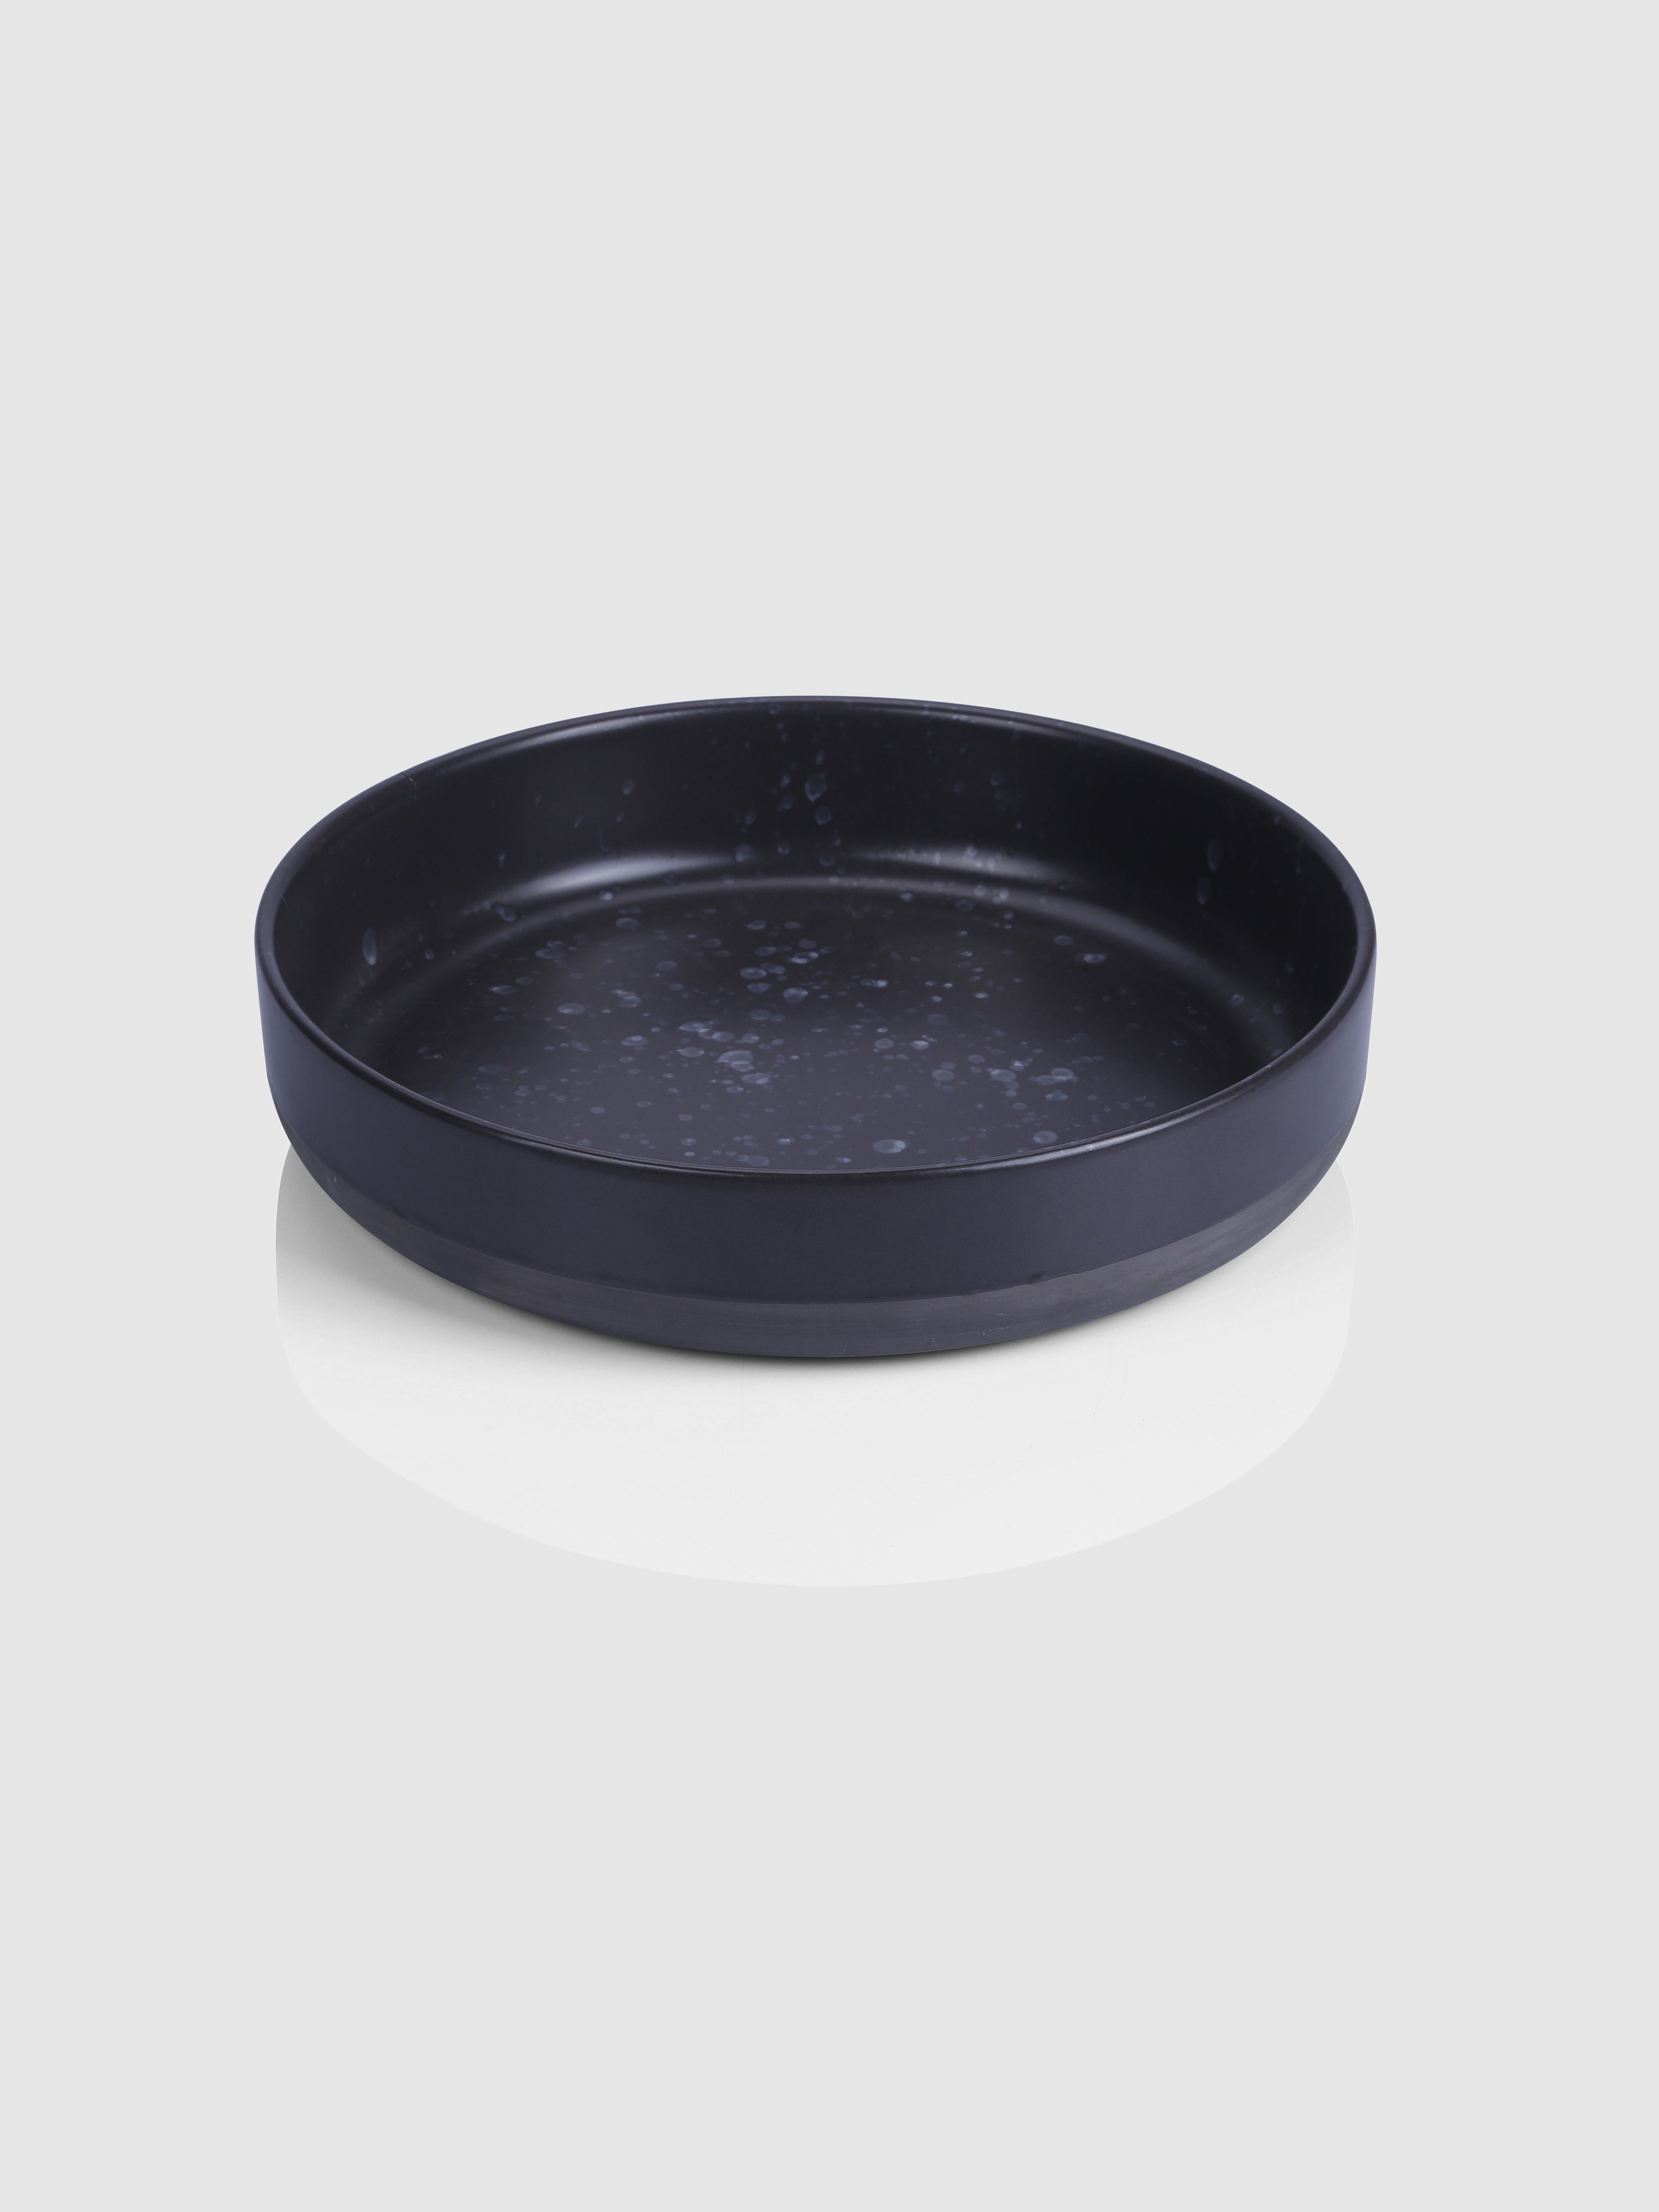 Aida Raw Stoneware Serving Bowl In Dark Speckled